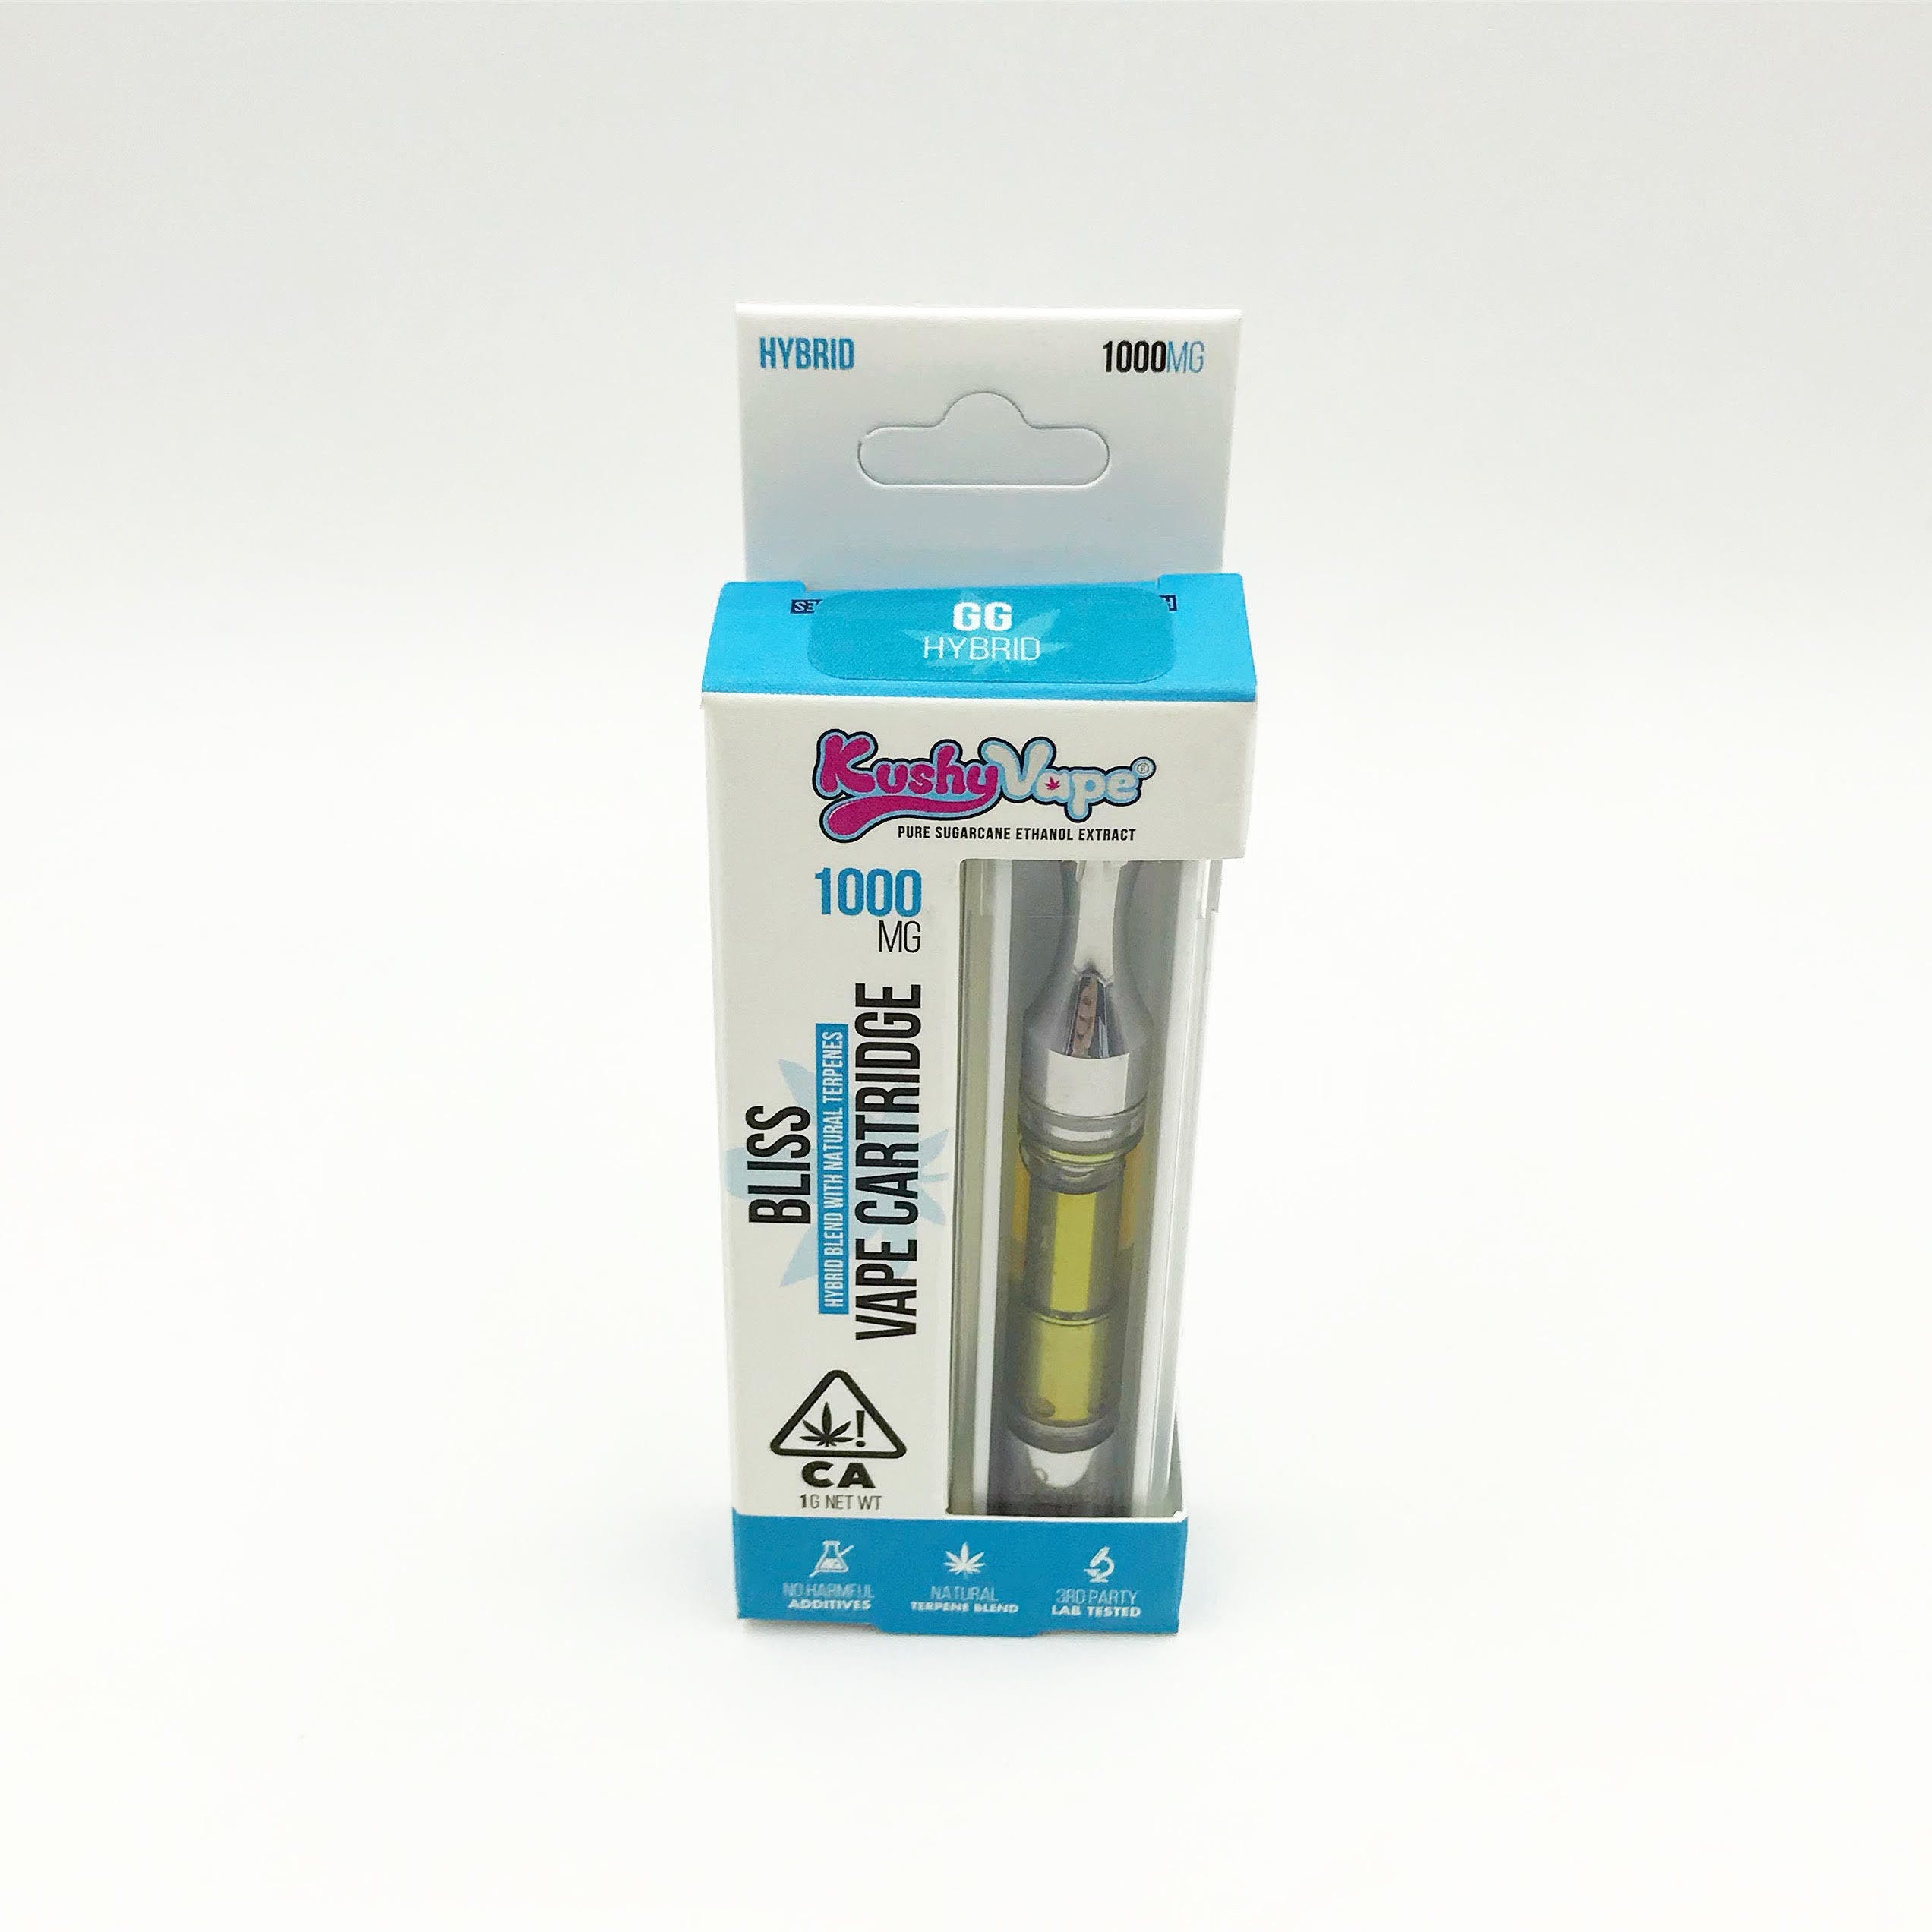 Kushy Vapes - Gorilla Glue Hybrid Cartridge